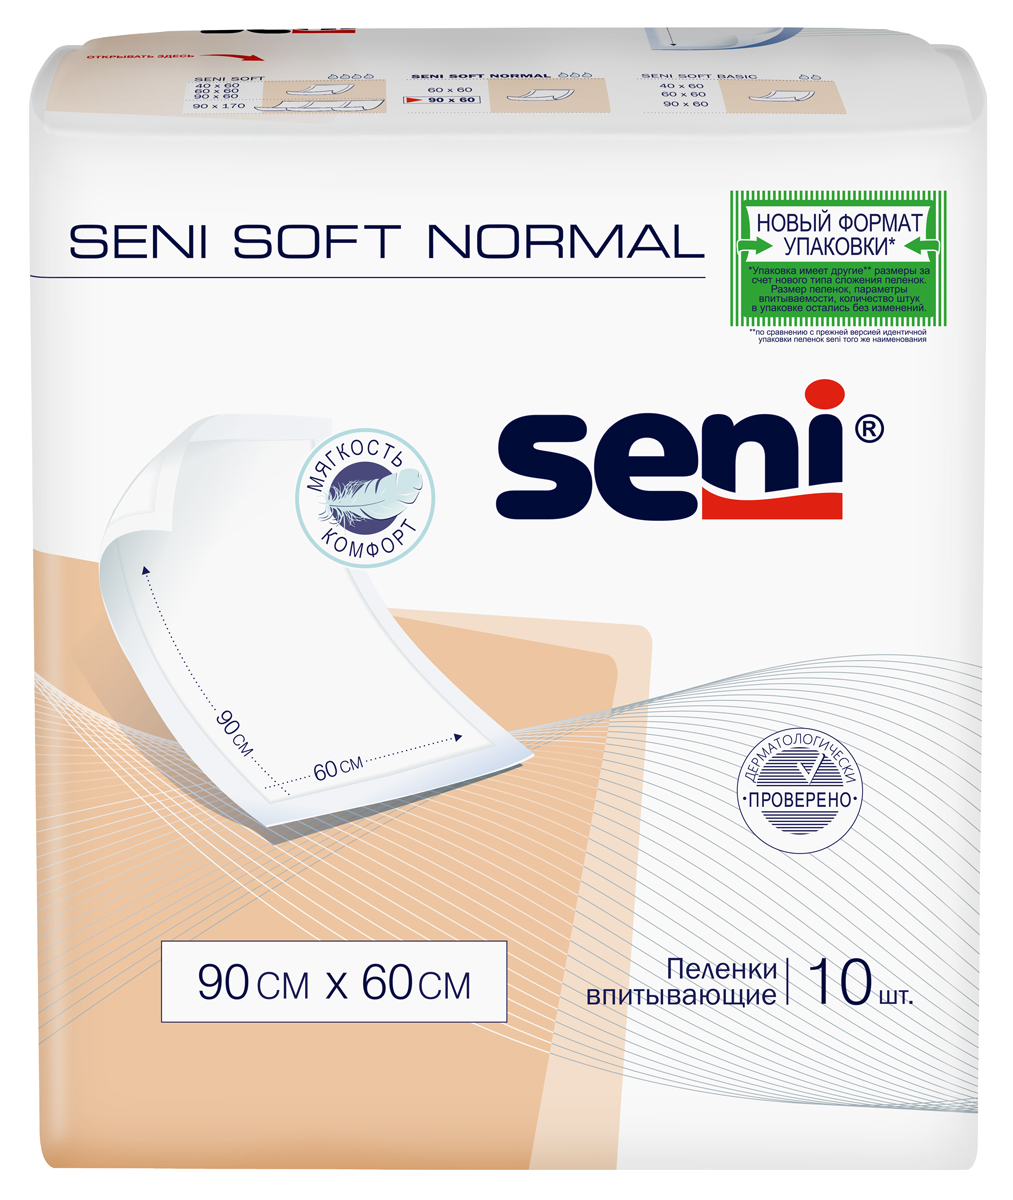 Пеленки Seni Soft Normal, 90 см x 60 см, 10 шт. пеленки seni soft normal 90 см x 60 см 10 шт